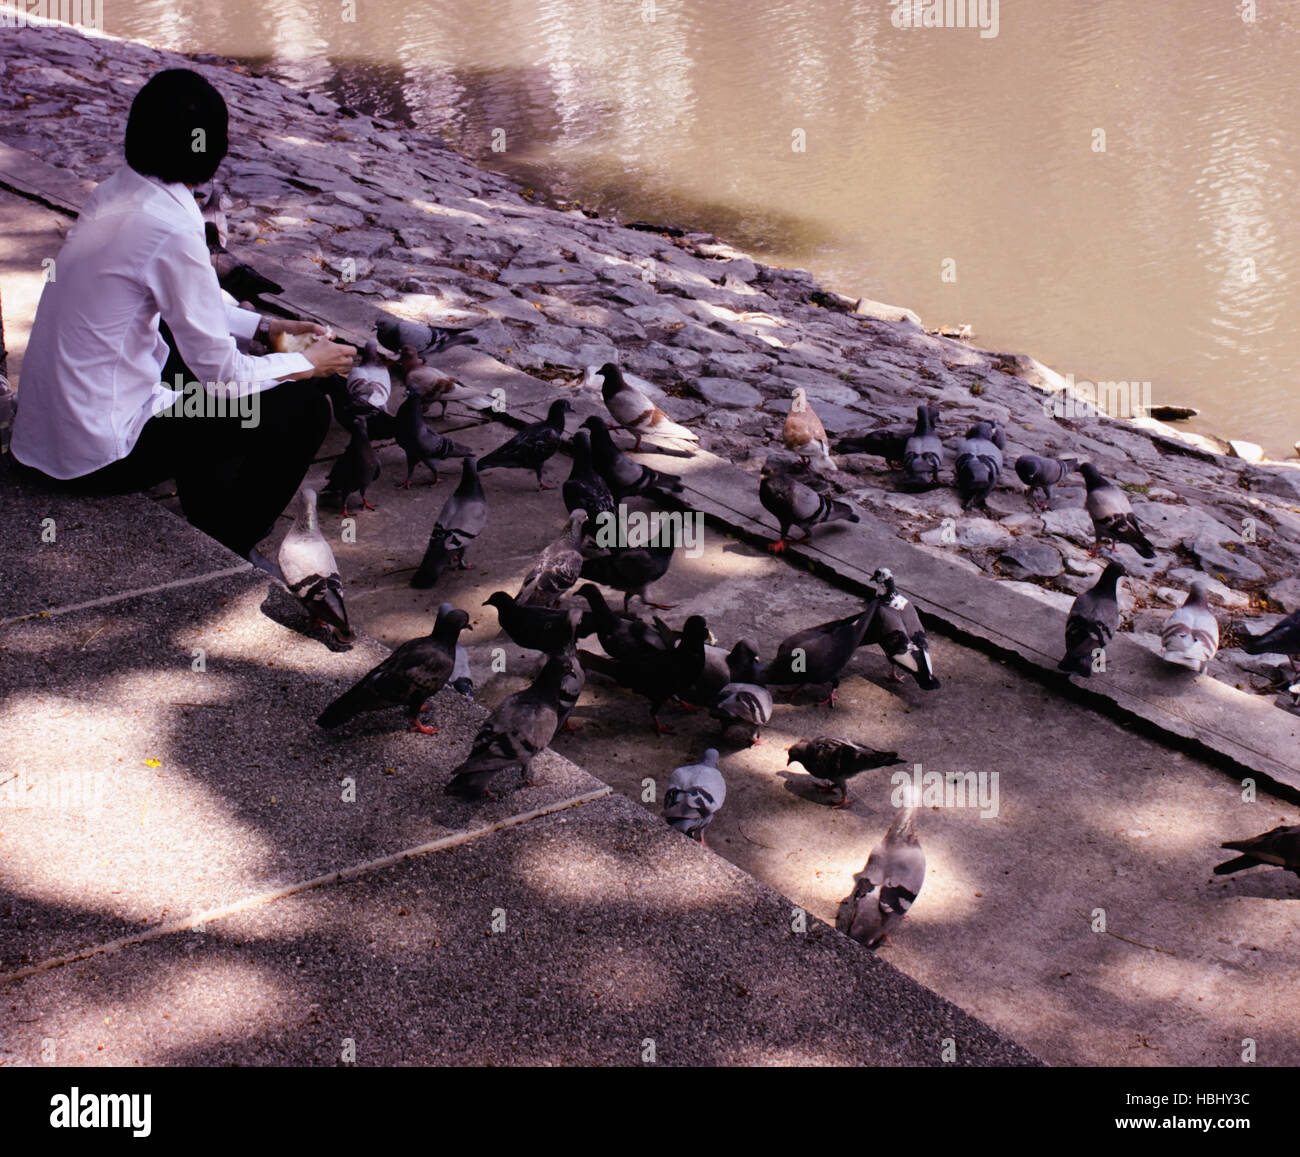 Una università di Chulalongkorn studente nutre gli uccelli del campus a Bangkok, in Thailandia. Foto Stock